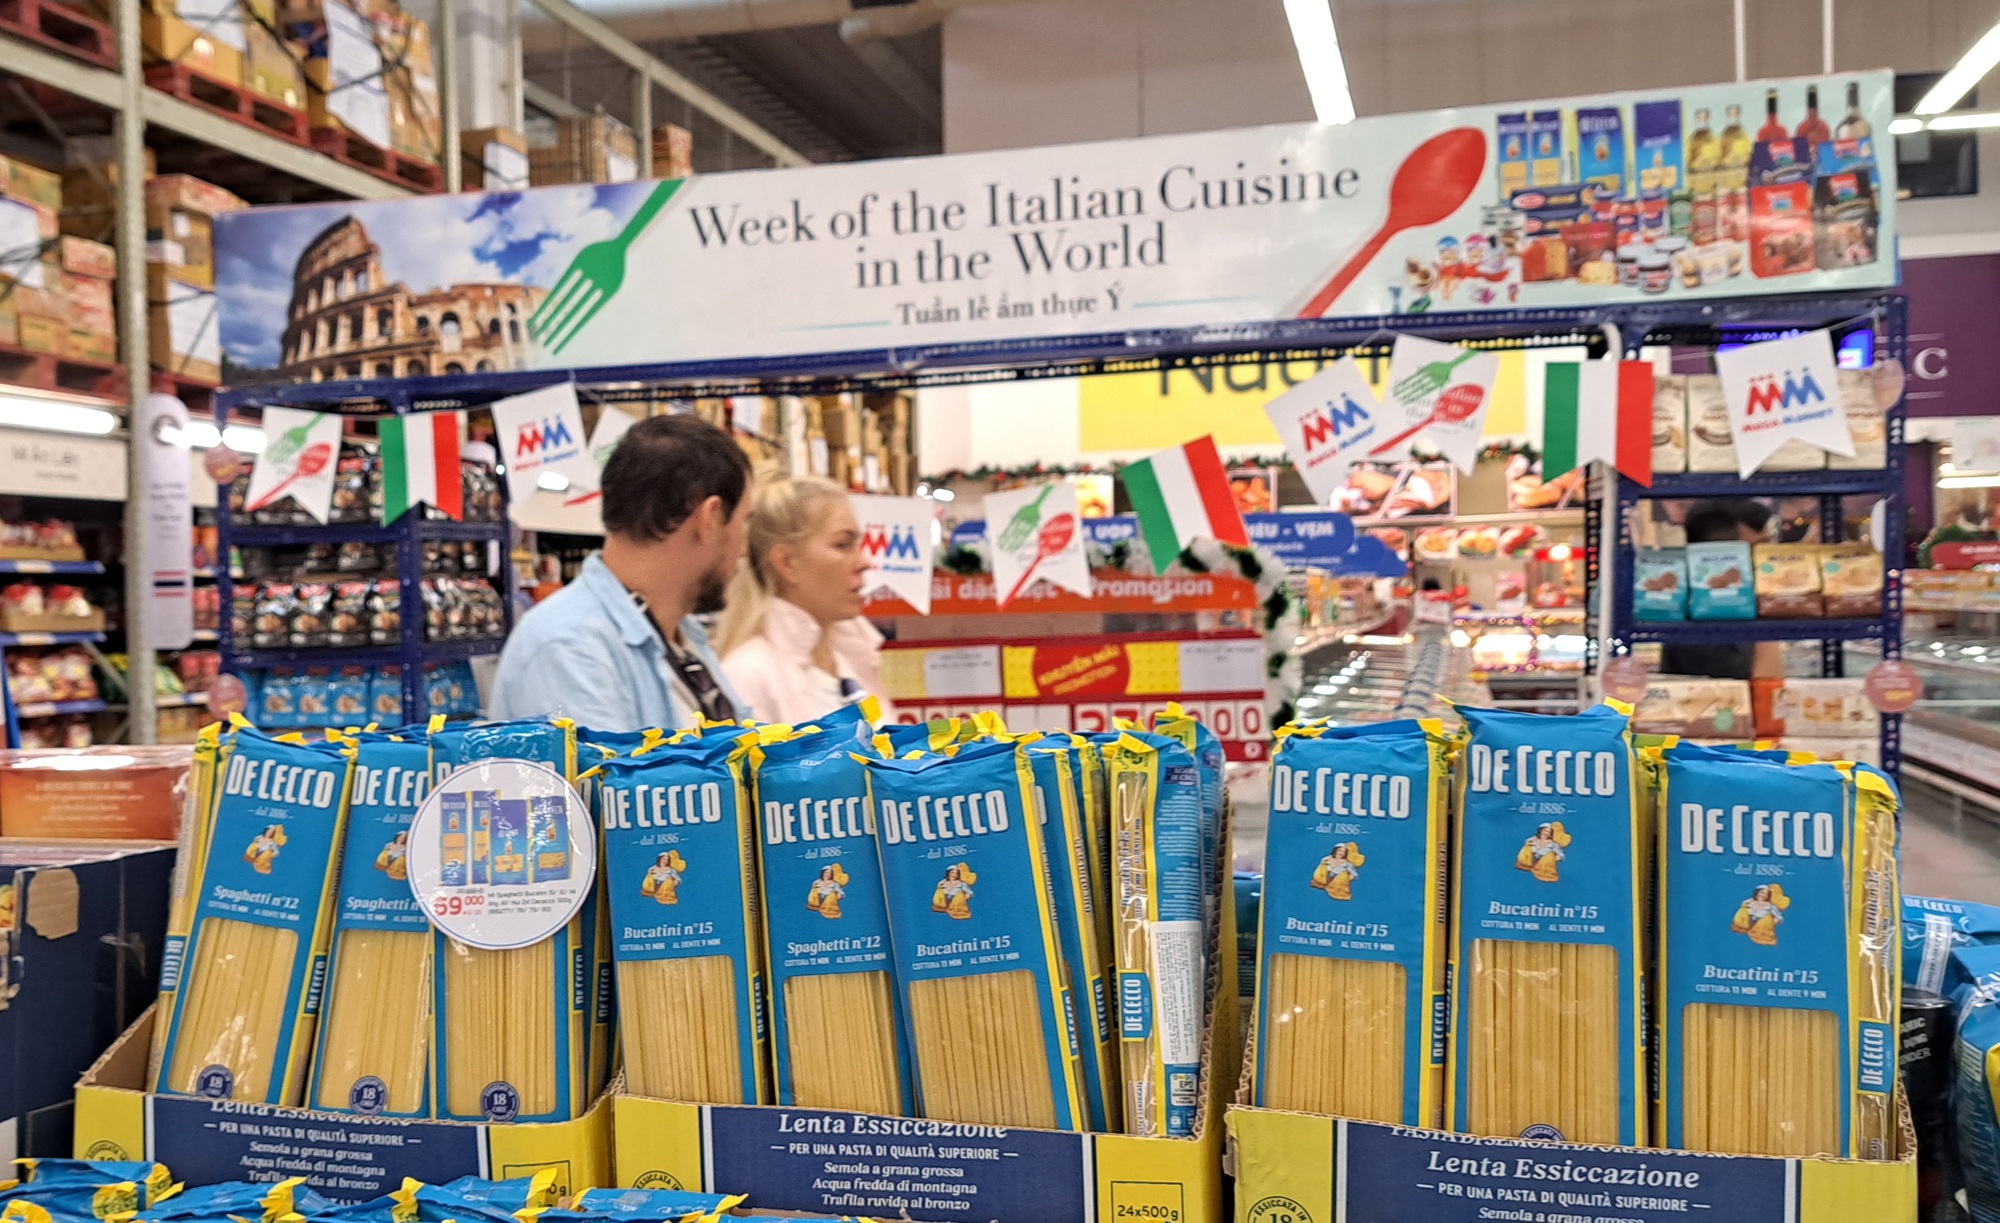 Mì spaghetti, rượu vang,… giảm giá mạnh tại “Tuần lễ ẩm thực Ý” - Ảnh 4.